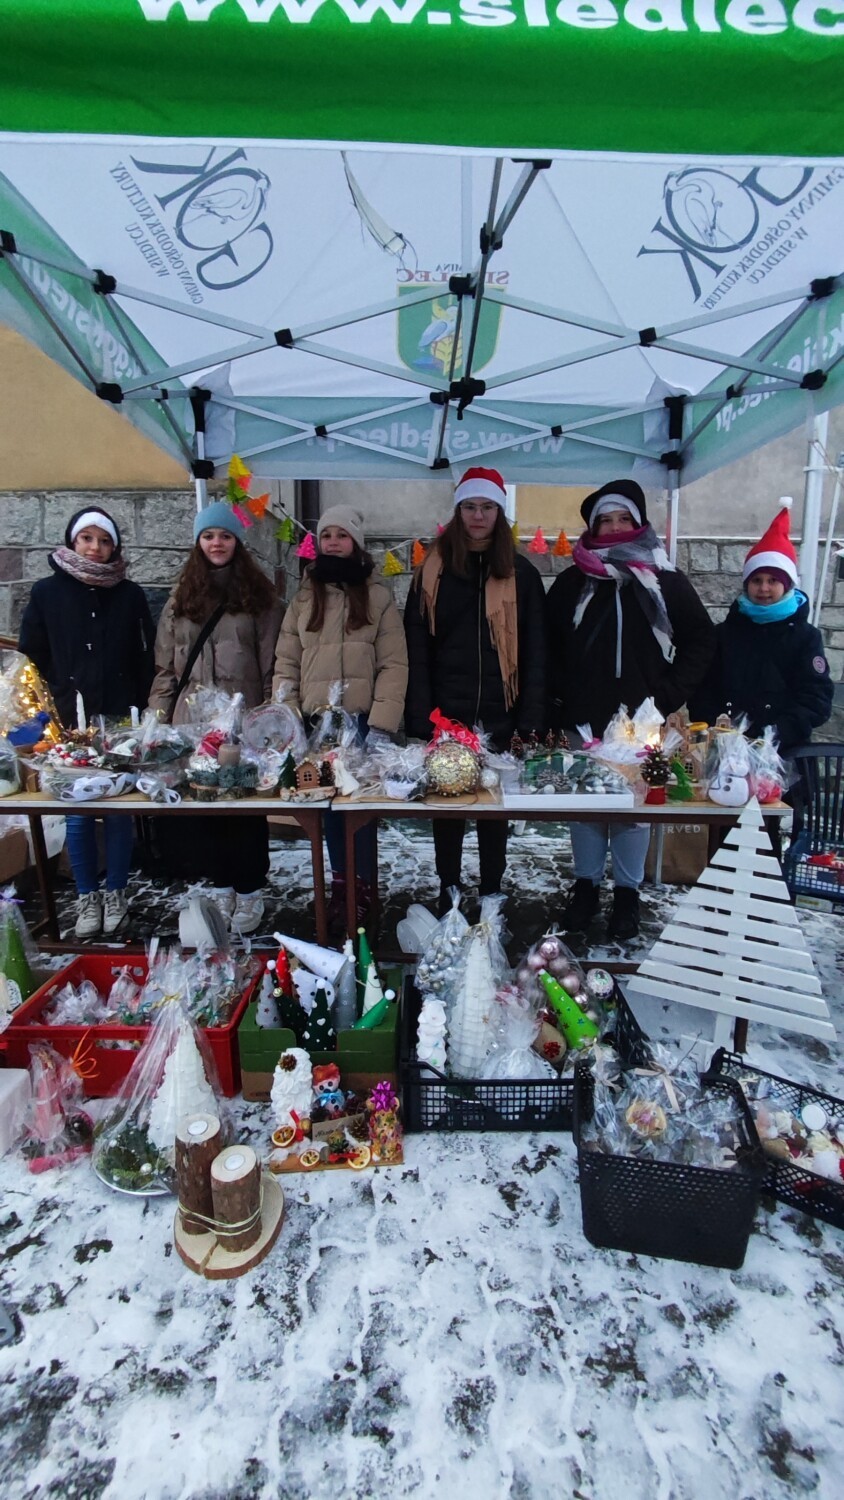 Szkoła Podstawowa w Siedlcu zorganizowała kiermasz ozdób Bożonarodzeniowych